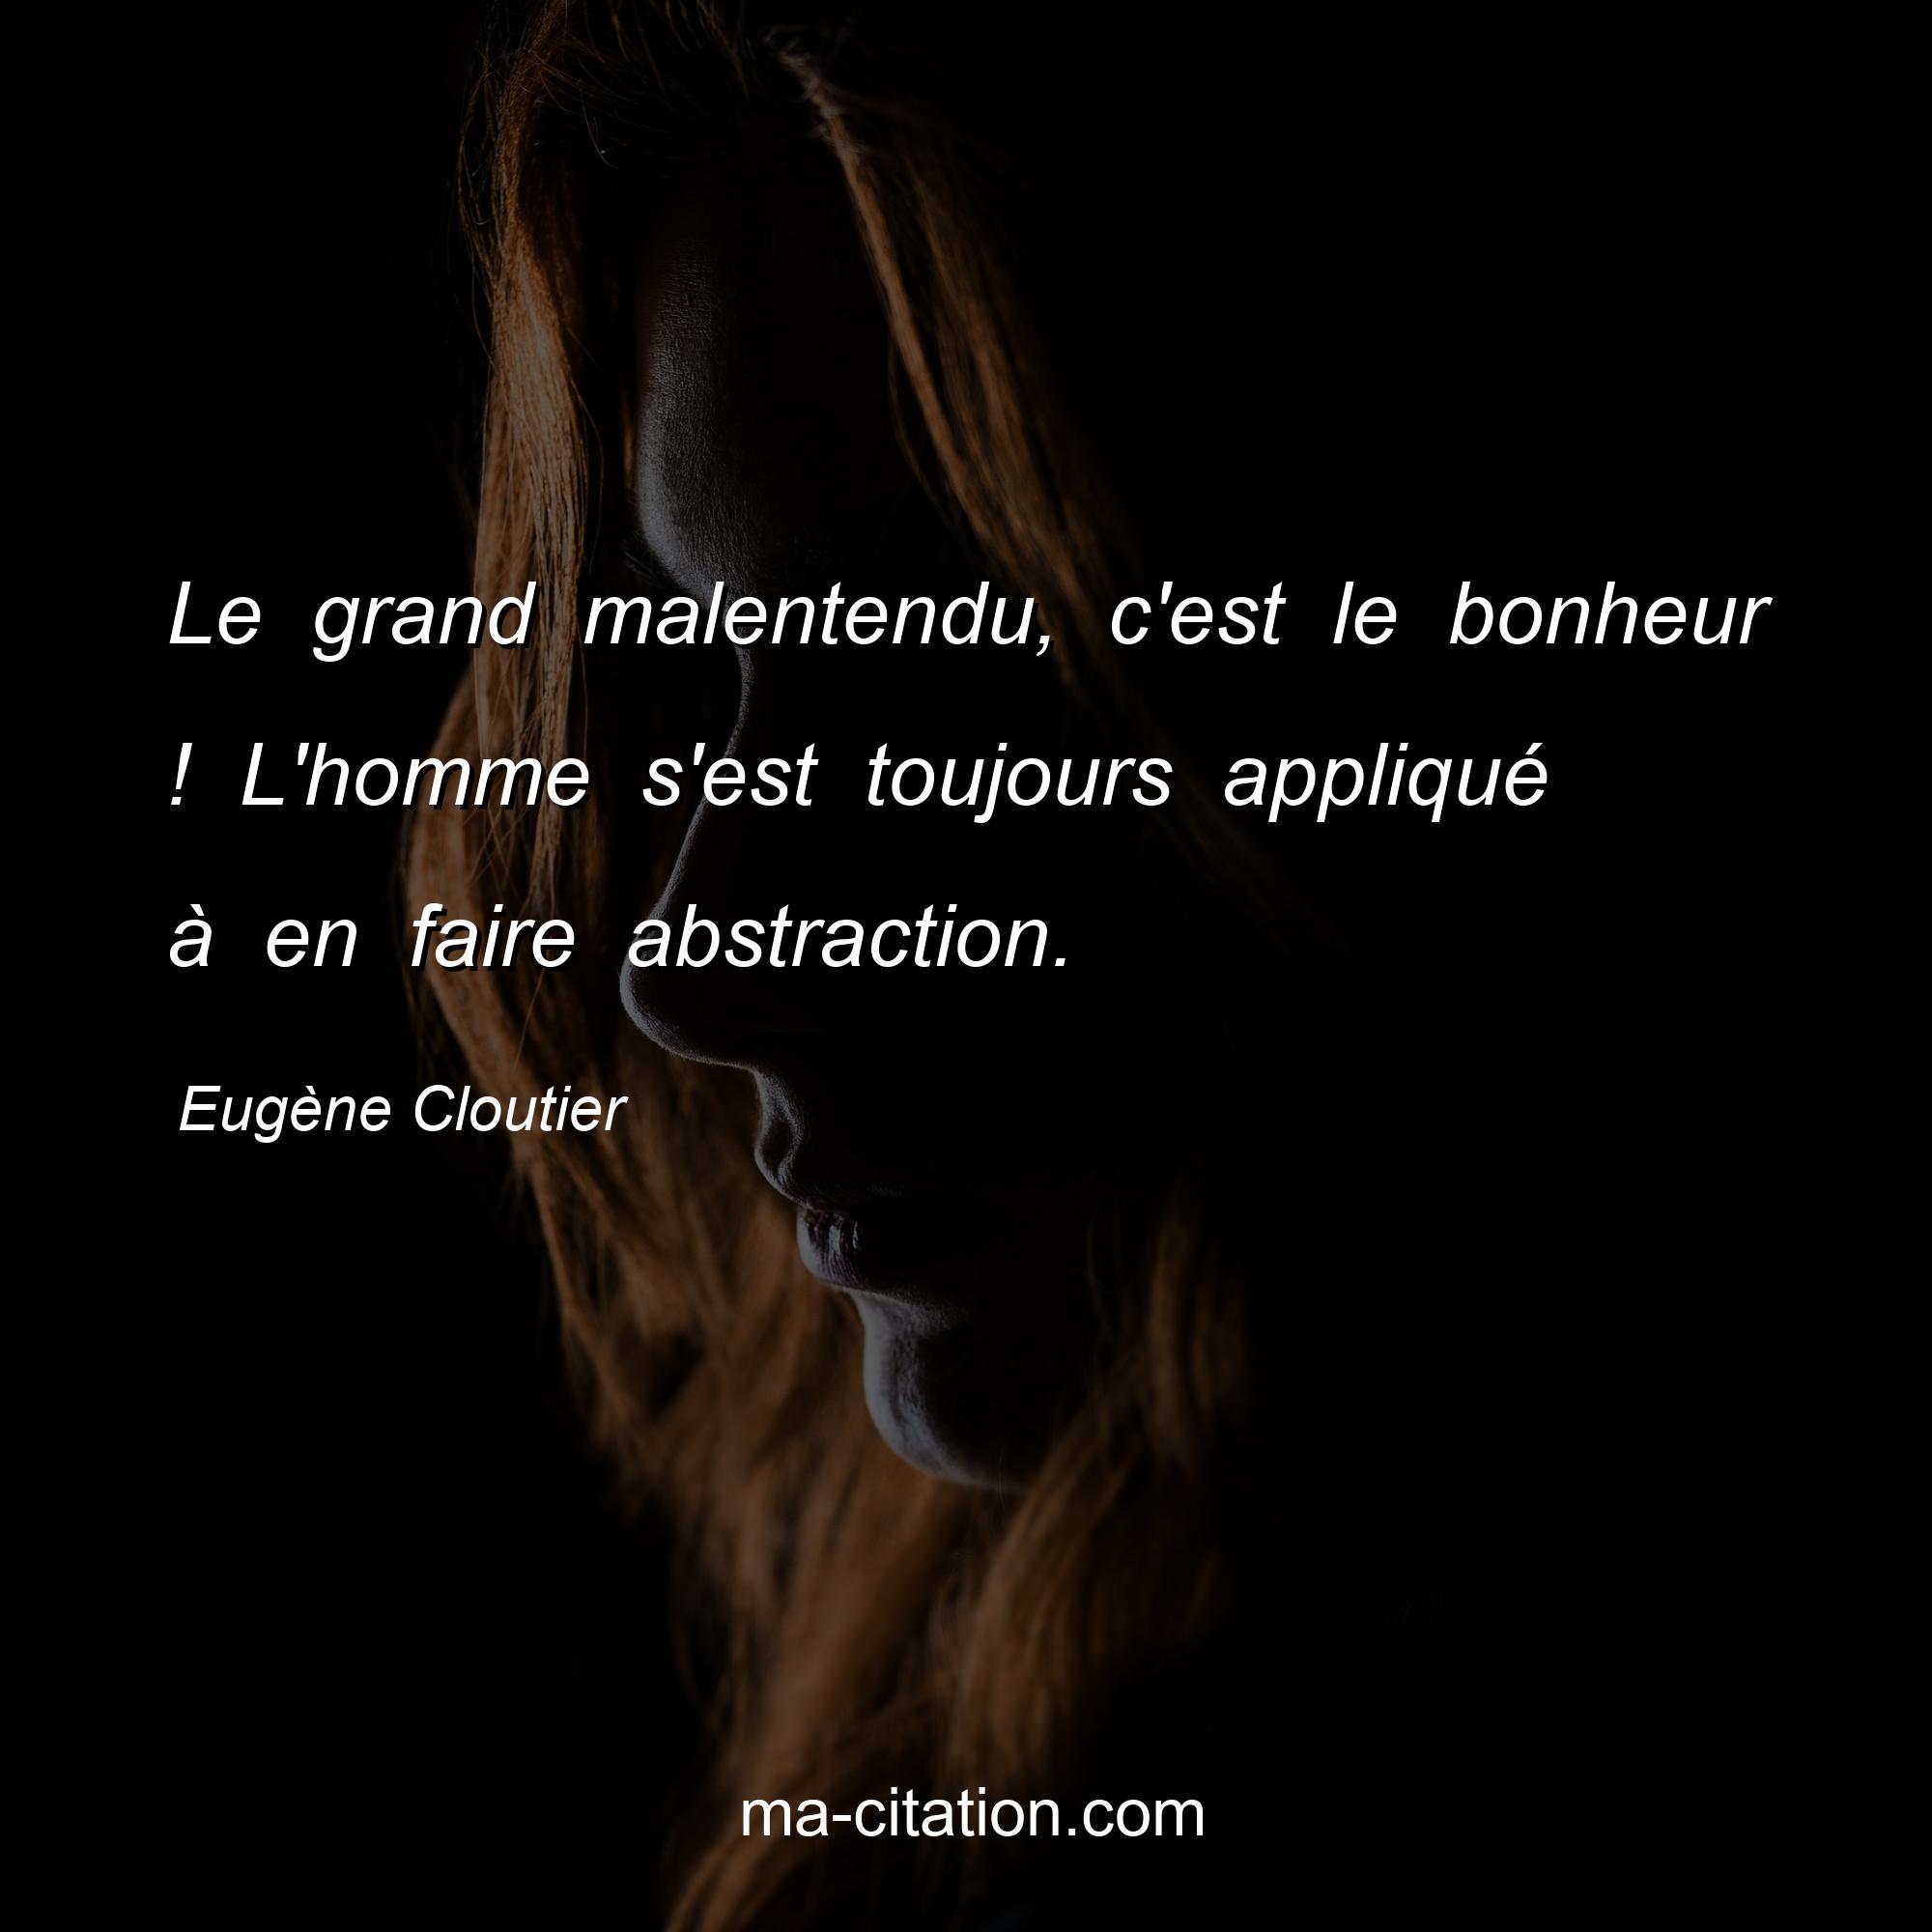 Eugène Cloutier : Le grand malentendu, c'est le bonheur ! L'homme s'est toujours appliqué à en faire abstraction.